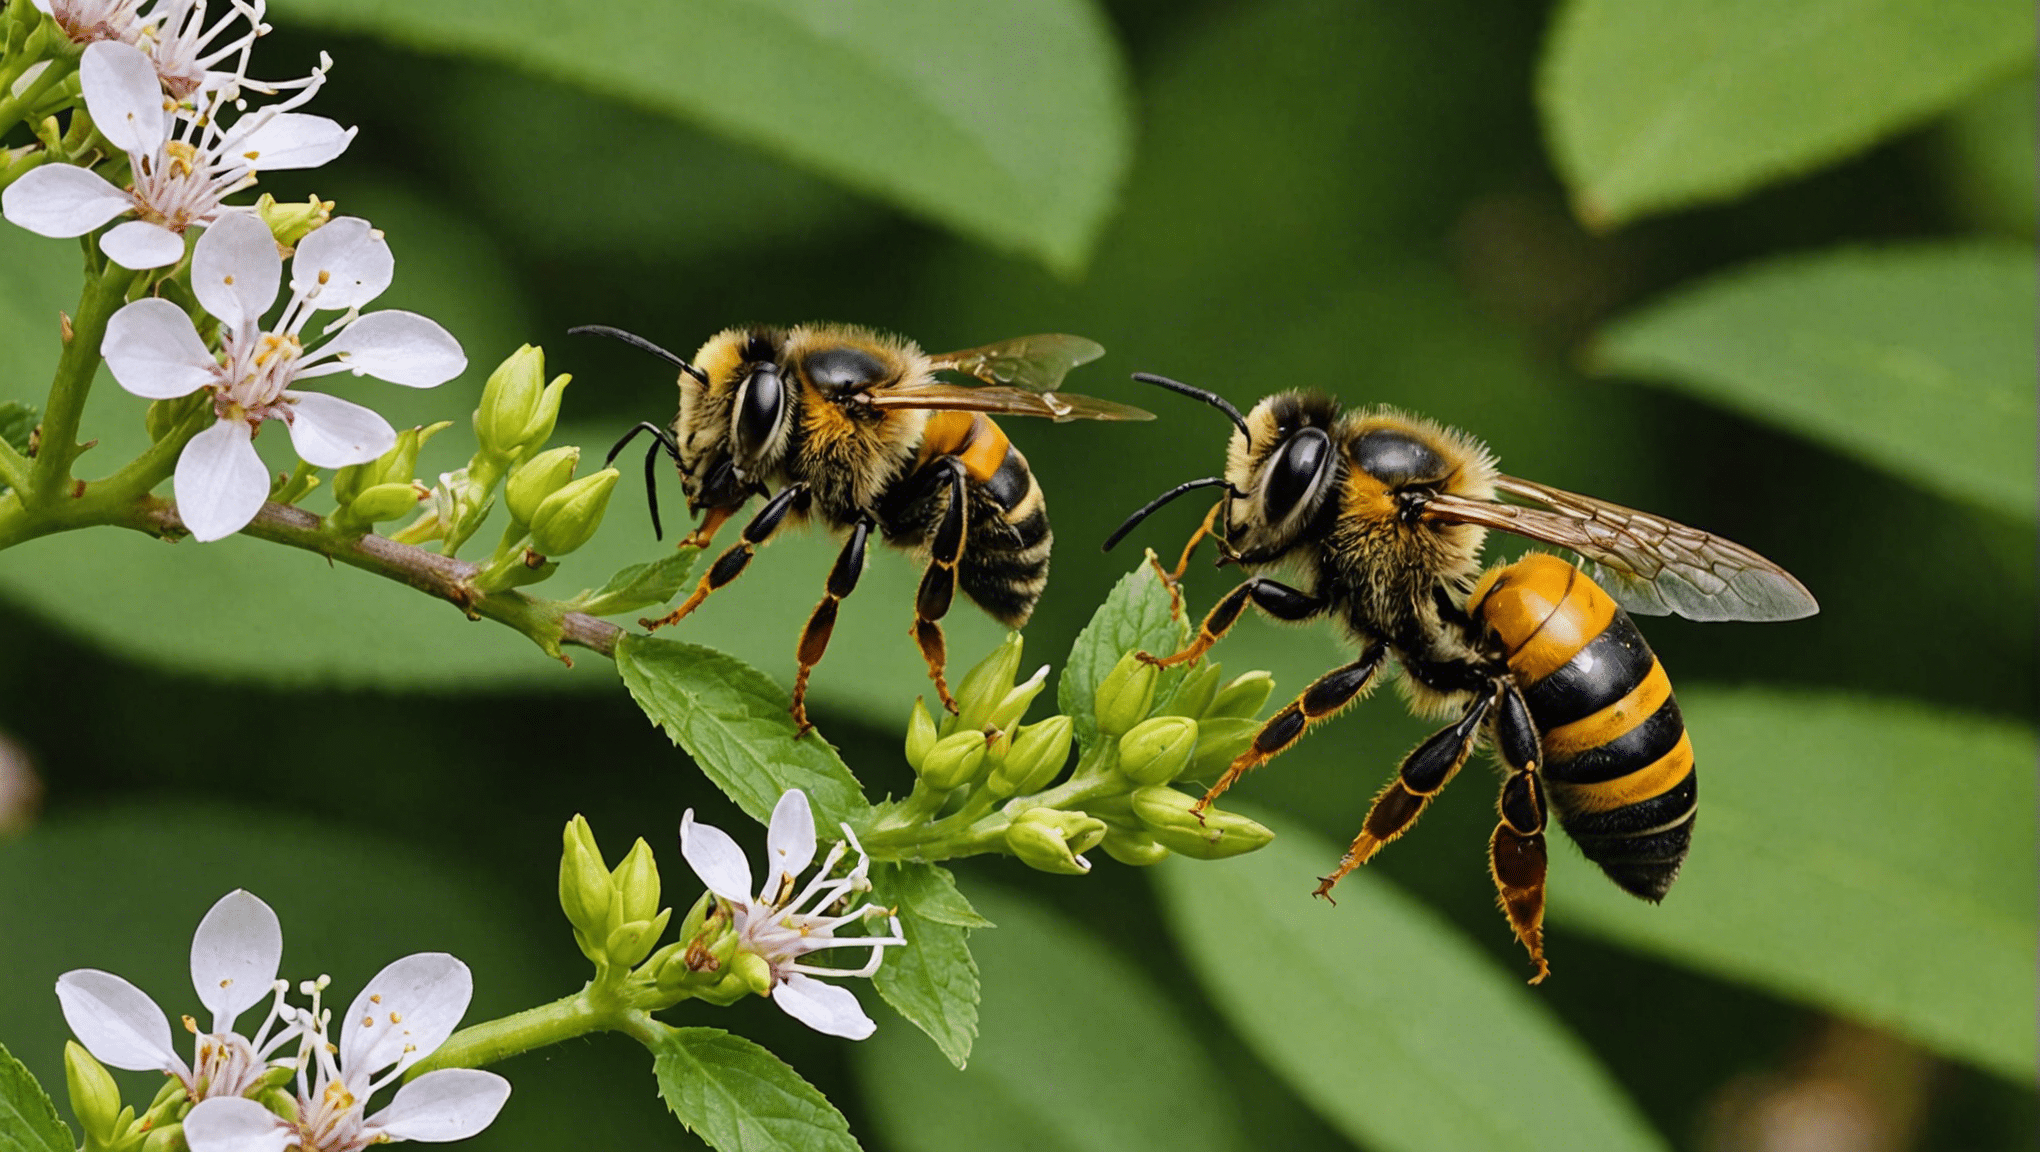 Arılar, eşekarısı ve eşekarısı arasındaki farkları keşfedin ve görünüşleri, davranışları ve yaşam alanları hakkında bilgi edinin.